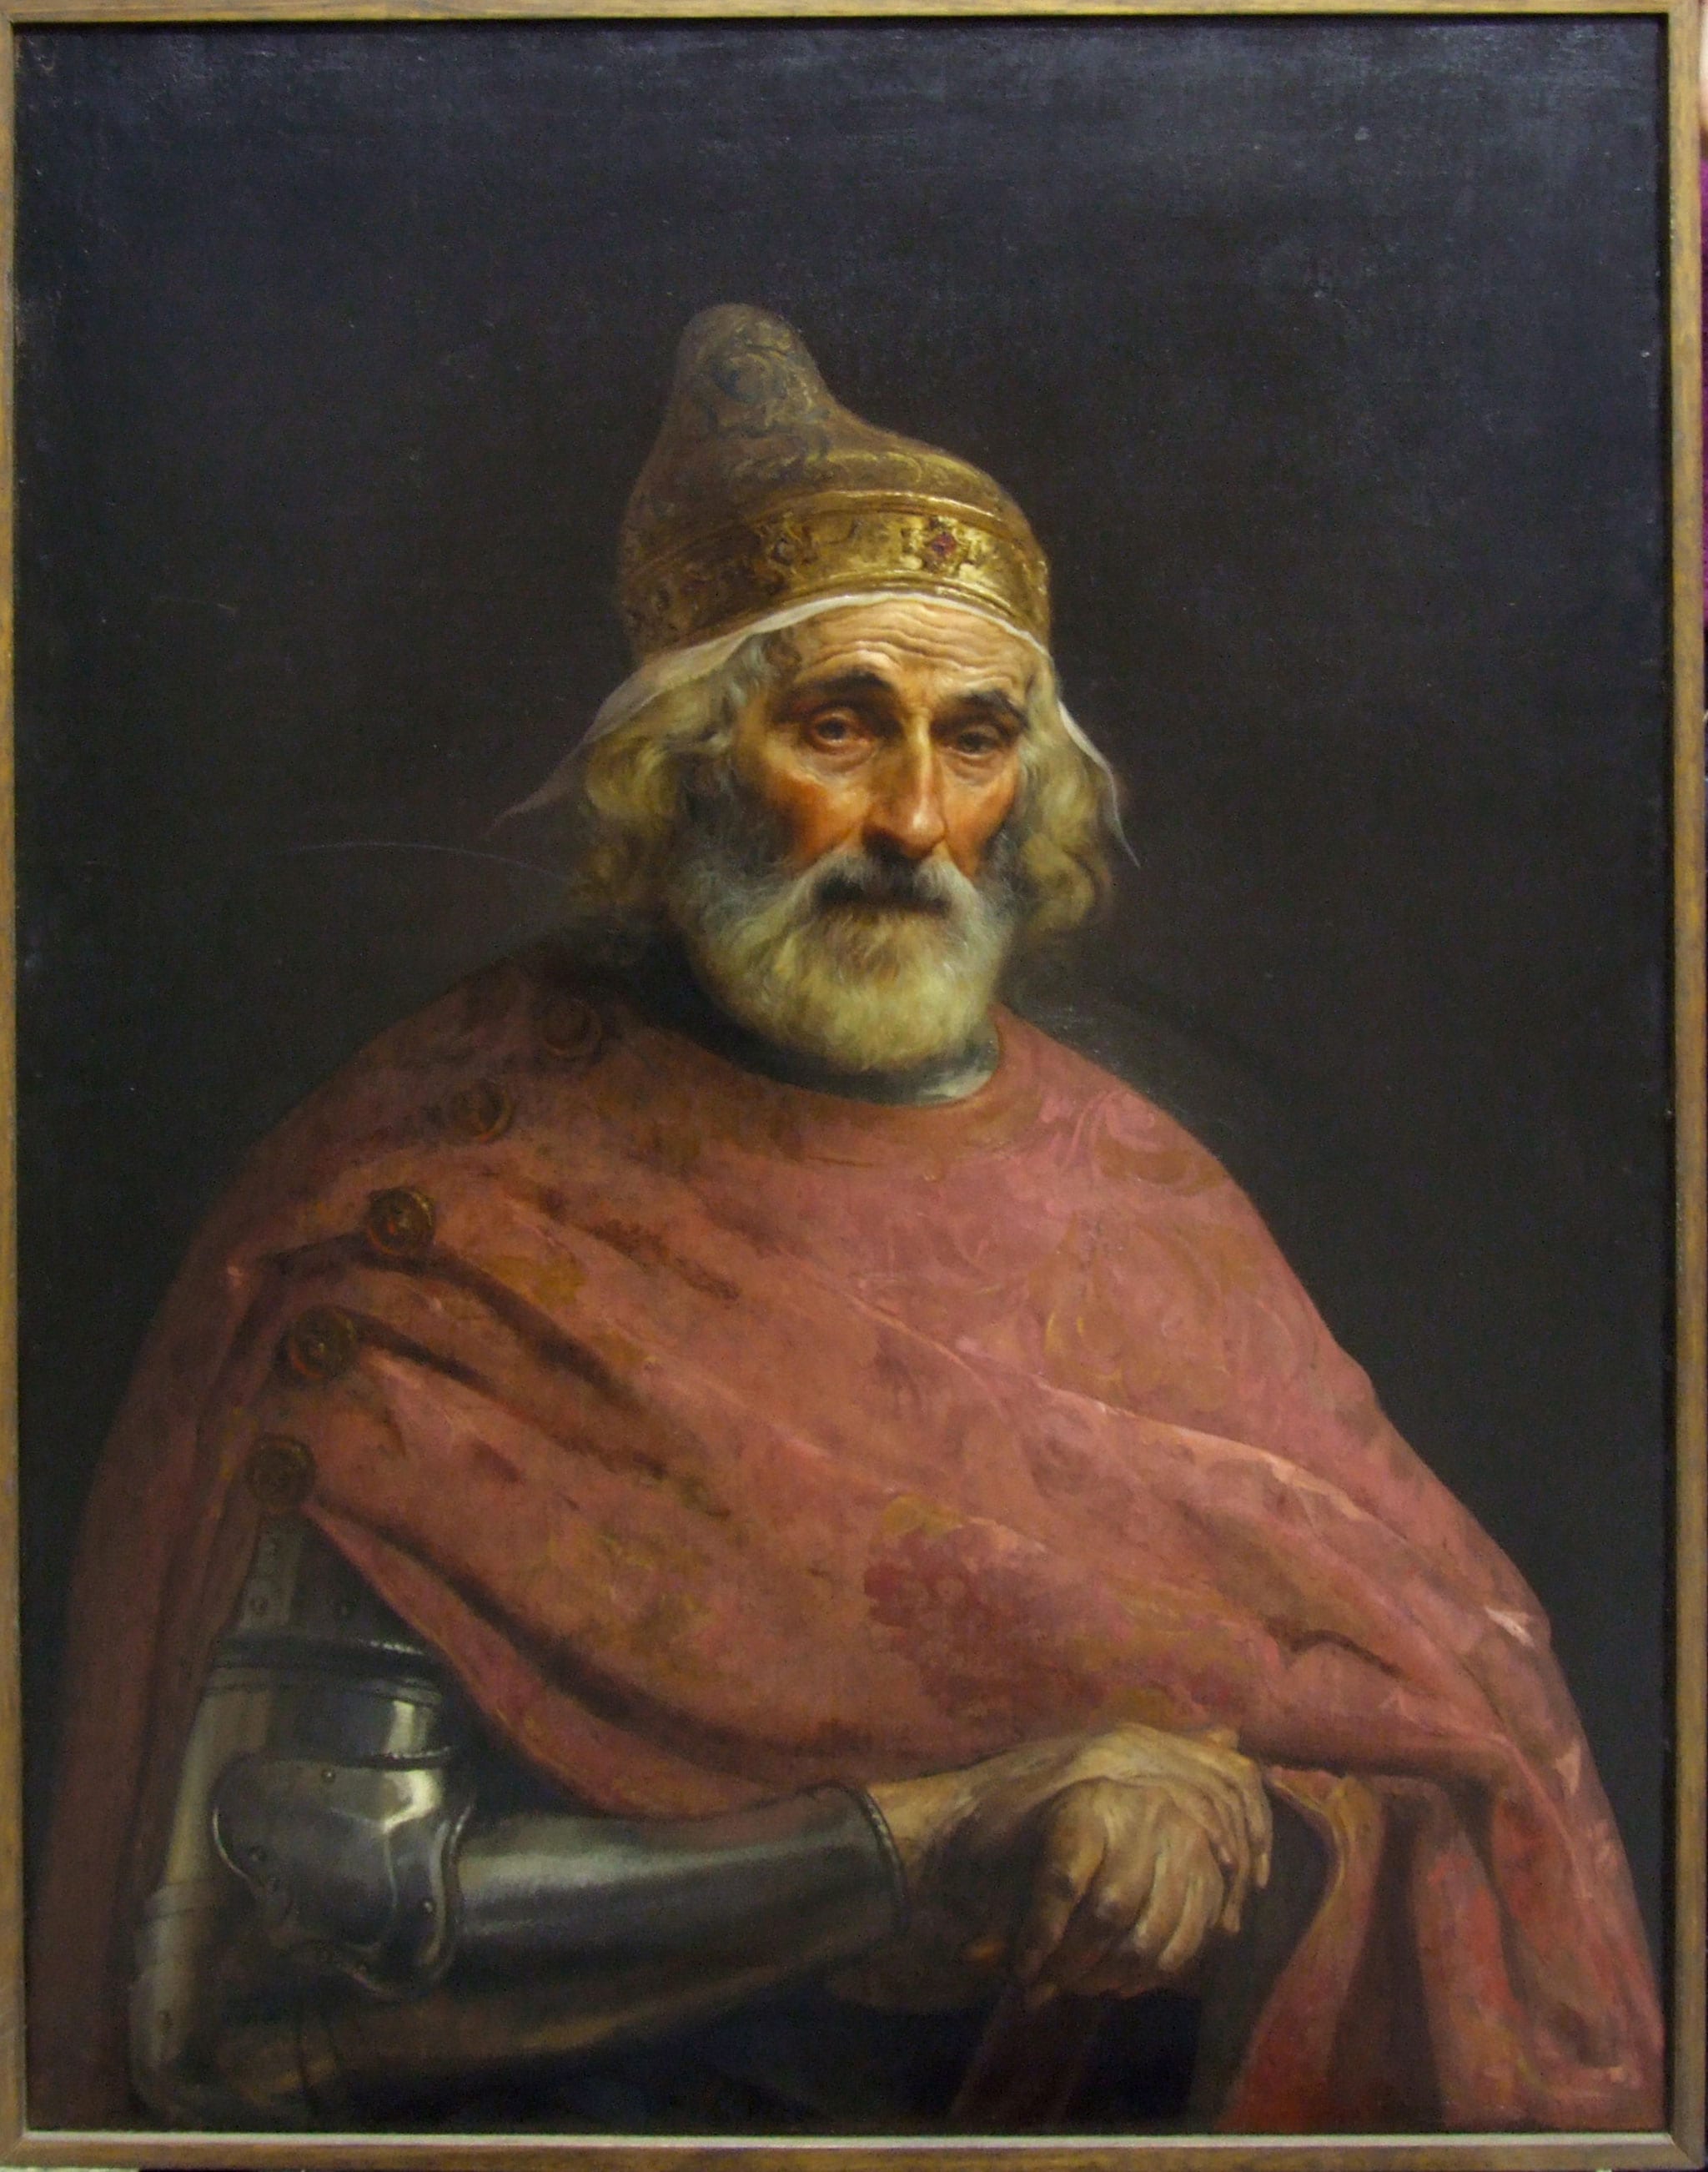 Francesco Hayez "Il doge Gritti", 1842. Pittura a olio su tela, 75 cm x 100 cm. Accademia di Belle Arti di Brera, Milano.